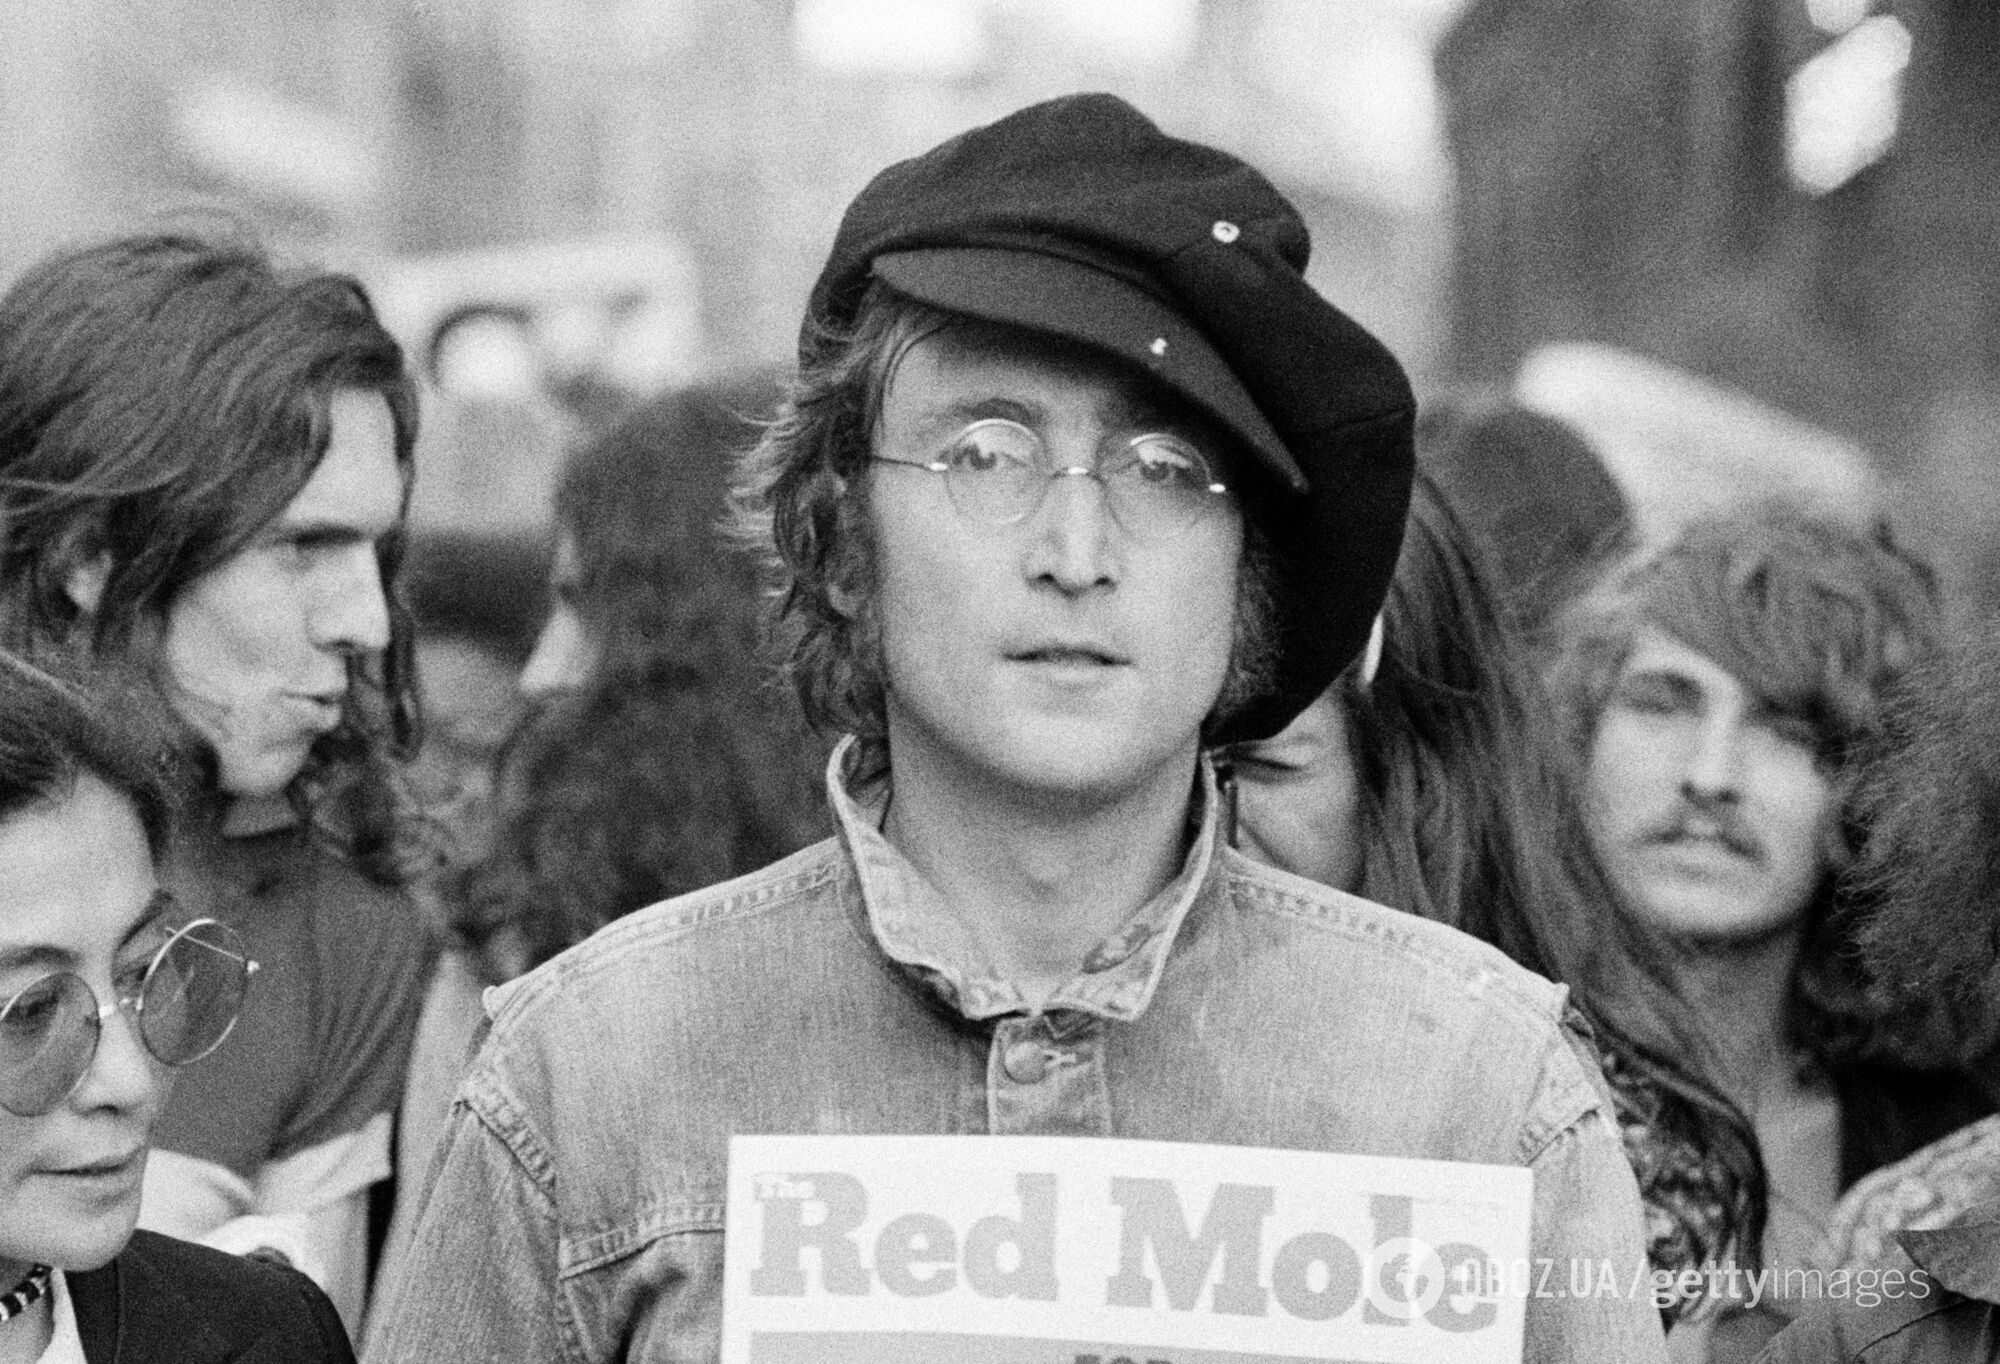 Вийшов трейлер фільму "Джон Леннон: вбивство без суду": документалка вперше оприлюднить дивні вибачення убивці